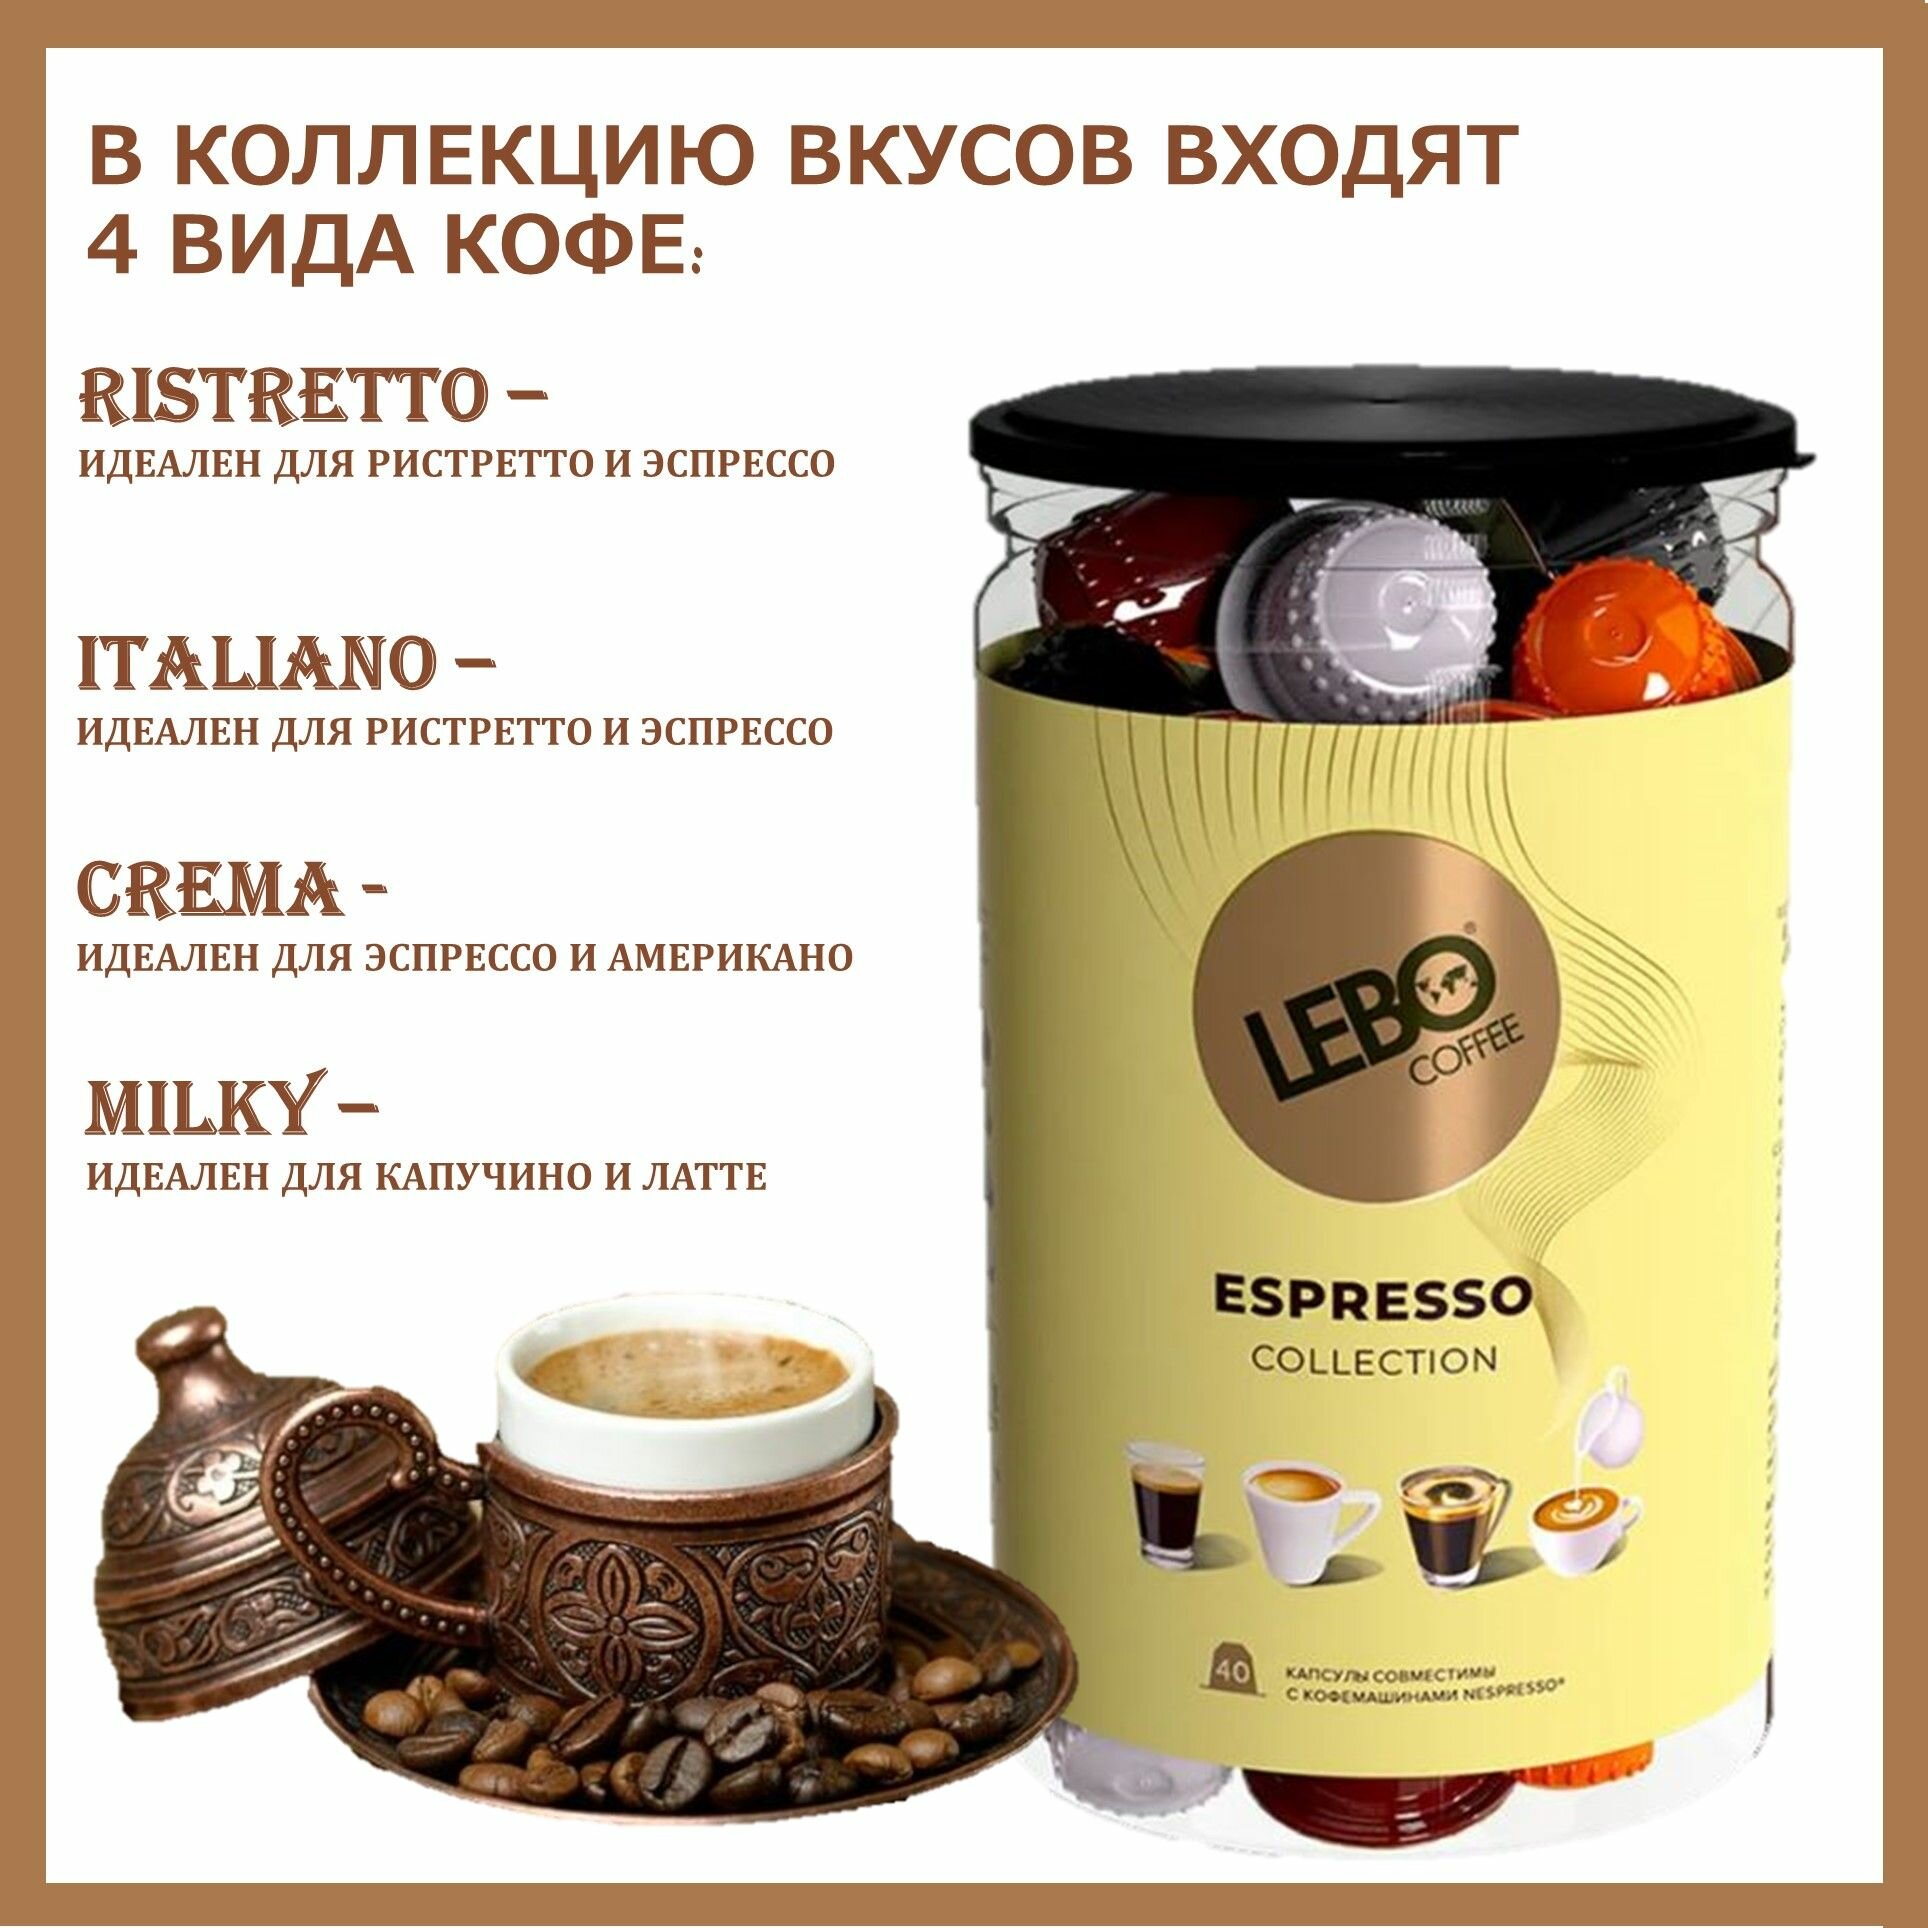 Кофе в капсулах Лебо Эспрессо Коллекшн (Lebo Espresso Collection) для кофемашин Nespresso 40 капсул * 5,5 г/ Россия - фотография № 2